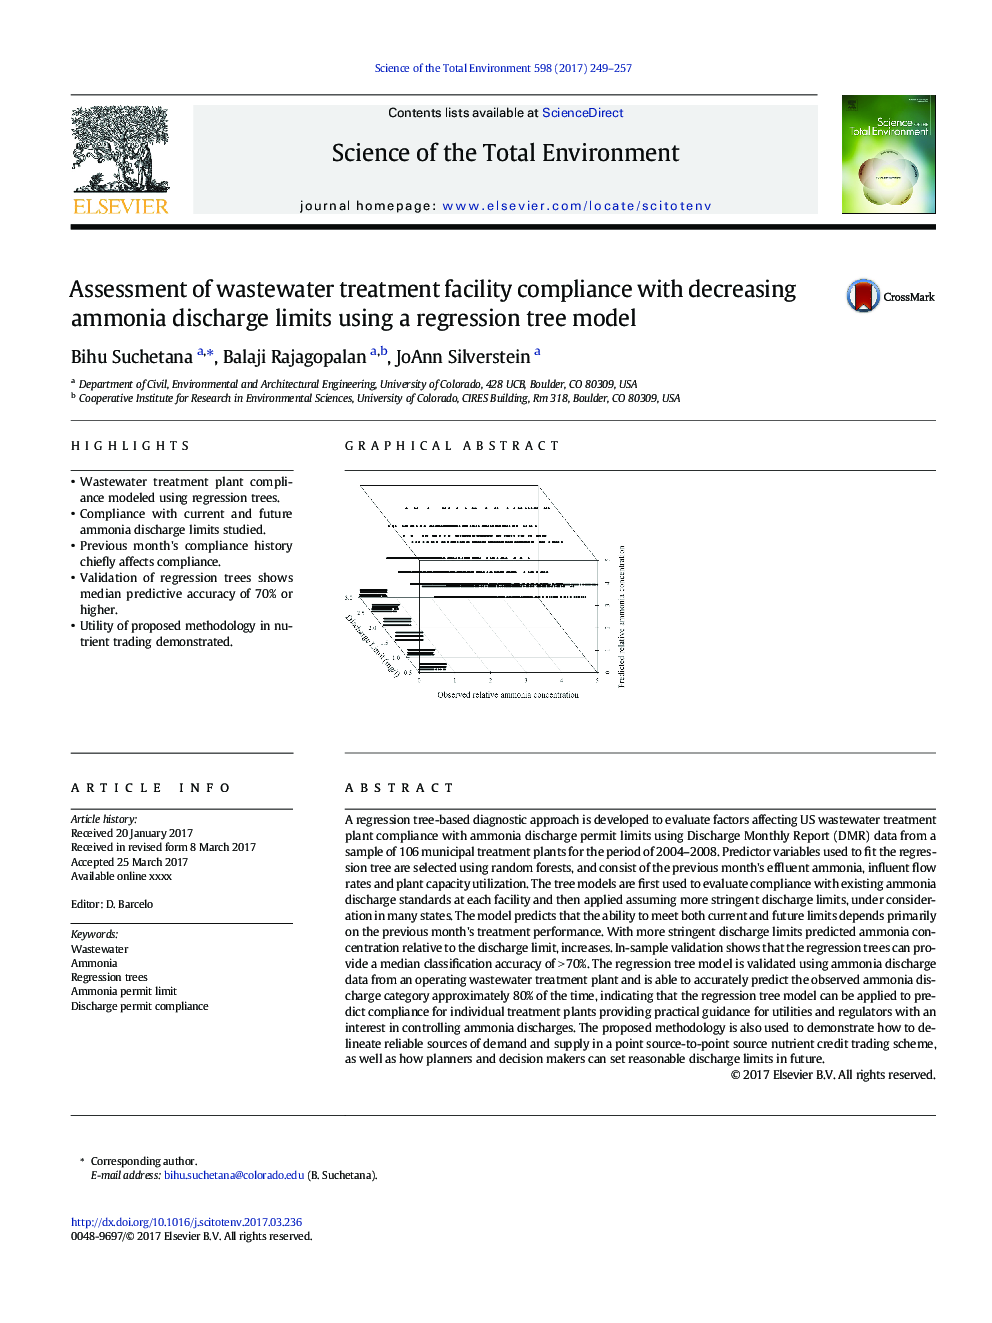 ارزیابی تطبیق پذیری تاسیسات تصفیه خانه فاضلاب با کاهش میزان تخلیه آمونیاک با استفاده از مدل درخت رگرسیون 